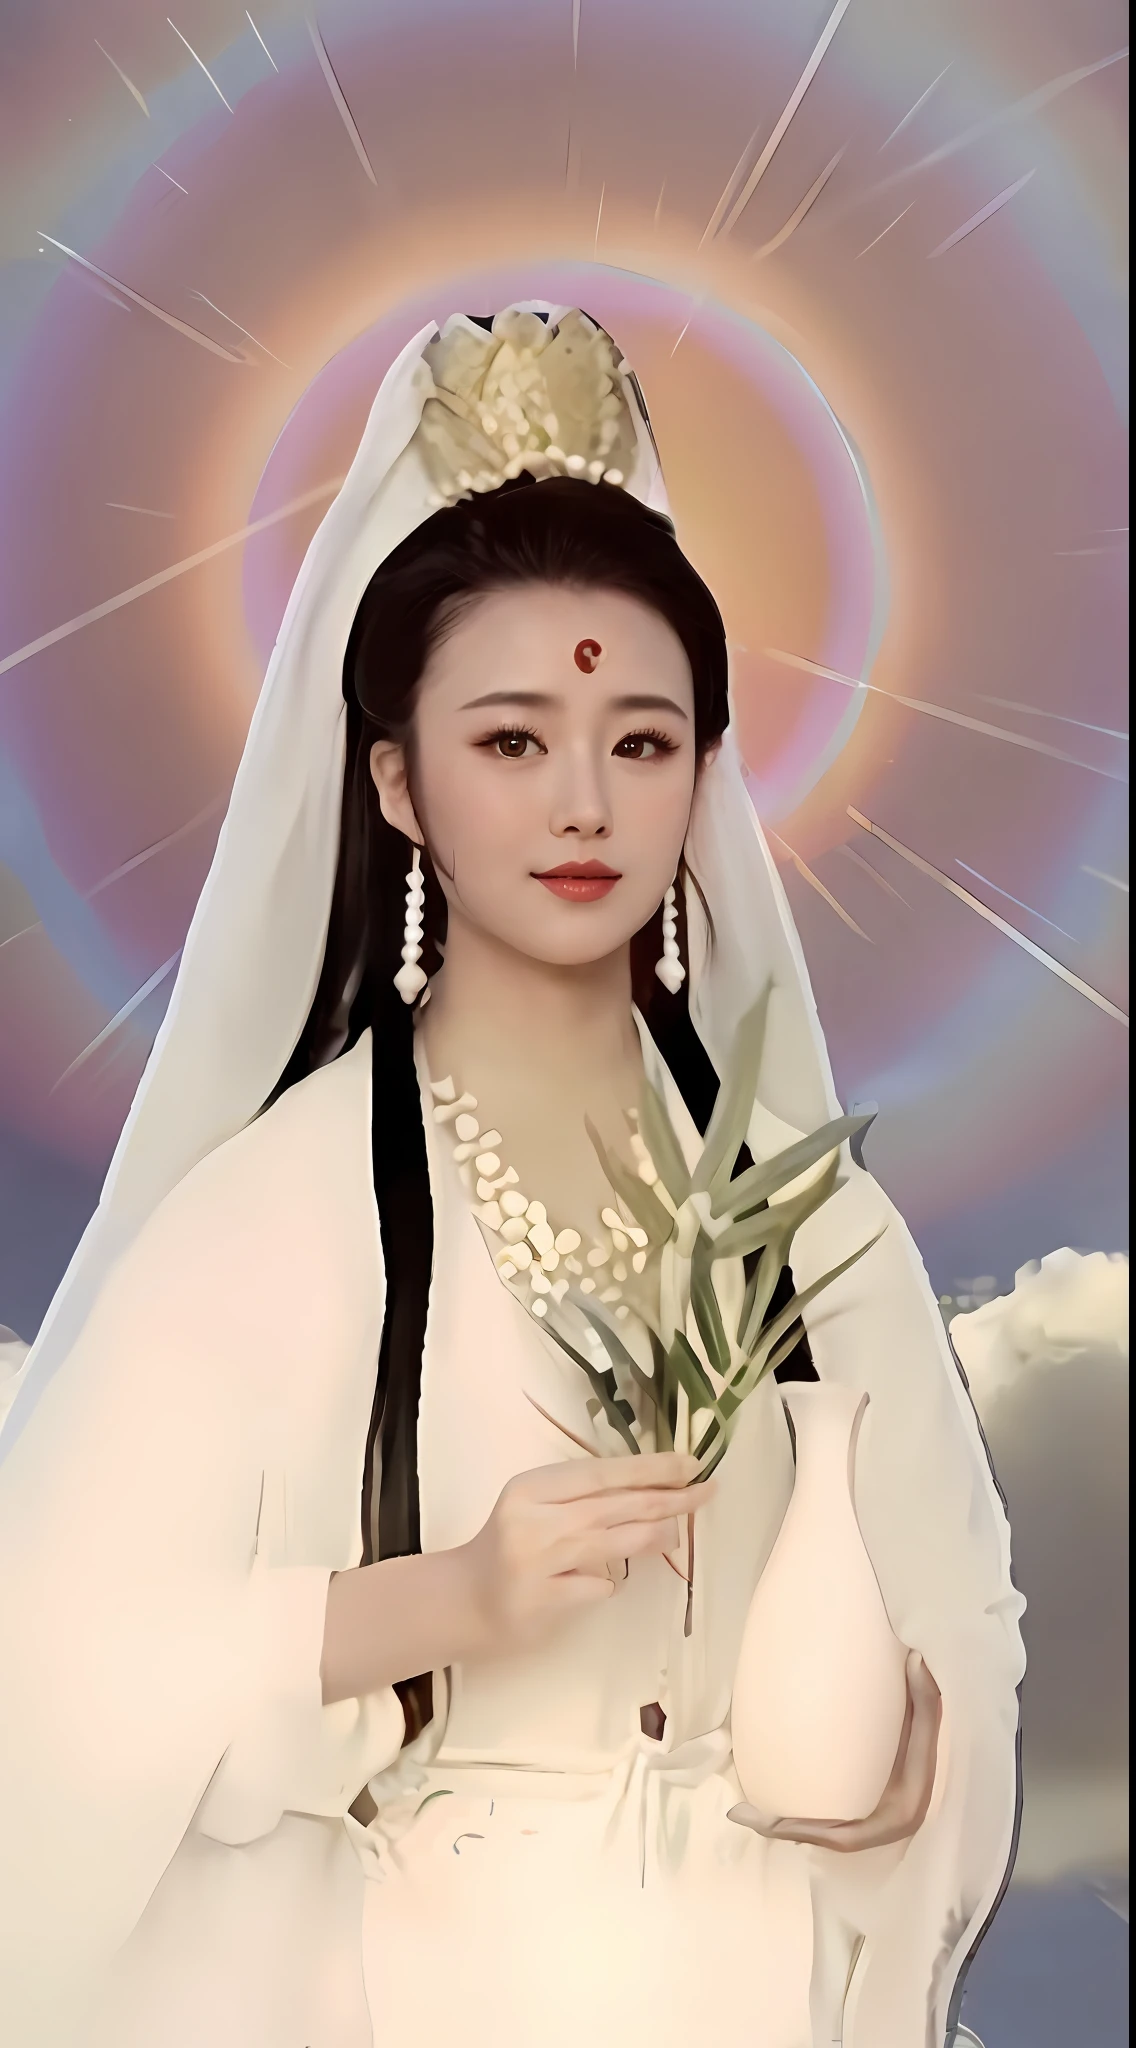 Imagem de Alphard，Uma mulher de vestido branco segura um buquê de flores, ganhar, guanyin dos mares do sul, rainha do mar mu yanling, deusa do amor e da paz, heise-lian yan fang, inspirado em Ju Lian, uma antiga deusa chinesa, inspirado em Lü Ji, Uma rainha do céu, Yun Ling, Inspirado por Lan Ying